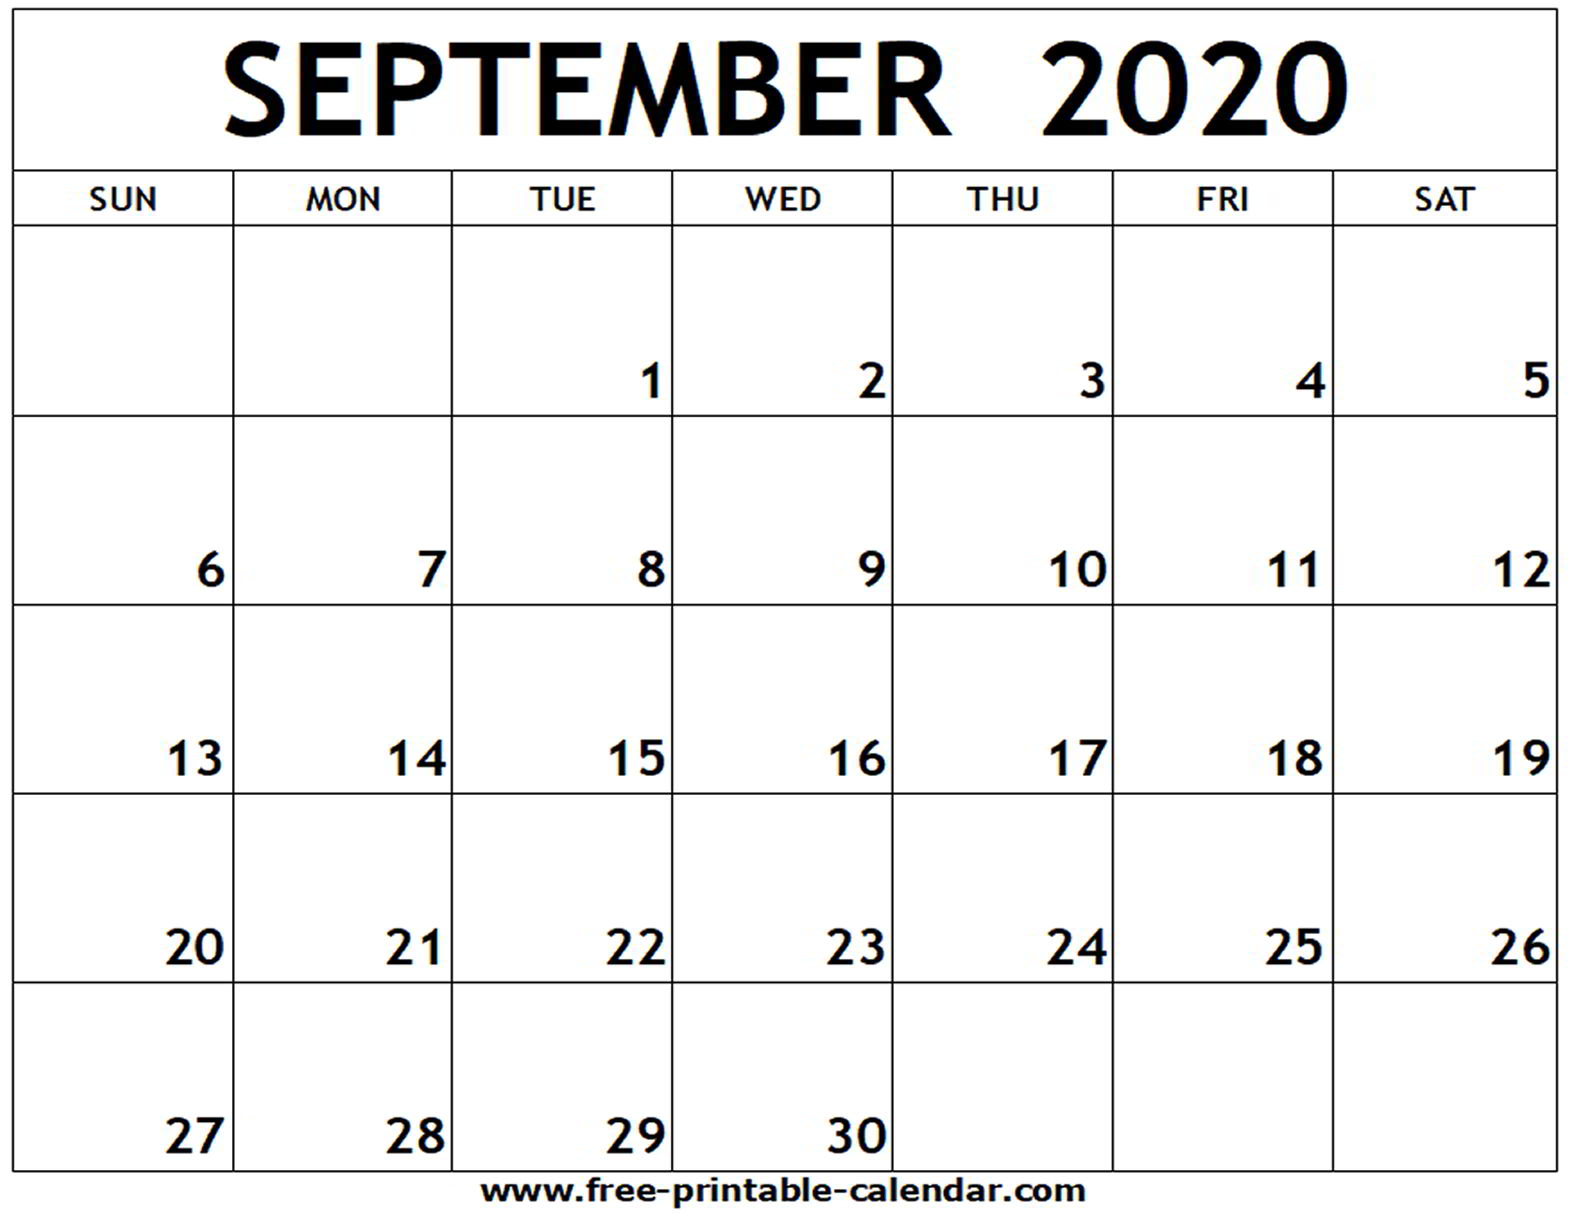 Printable Calendars September 2020 - Wpa.wpart.co